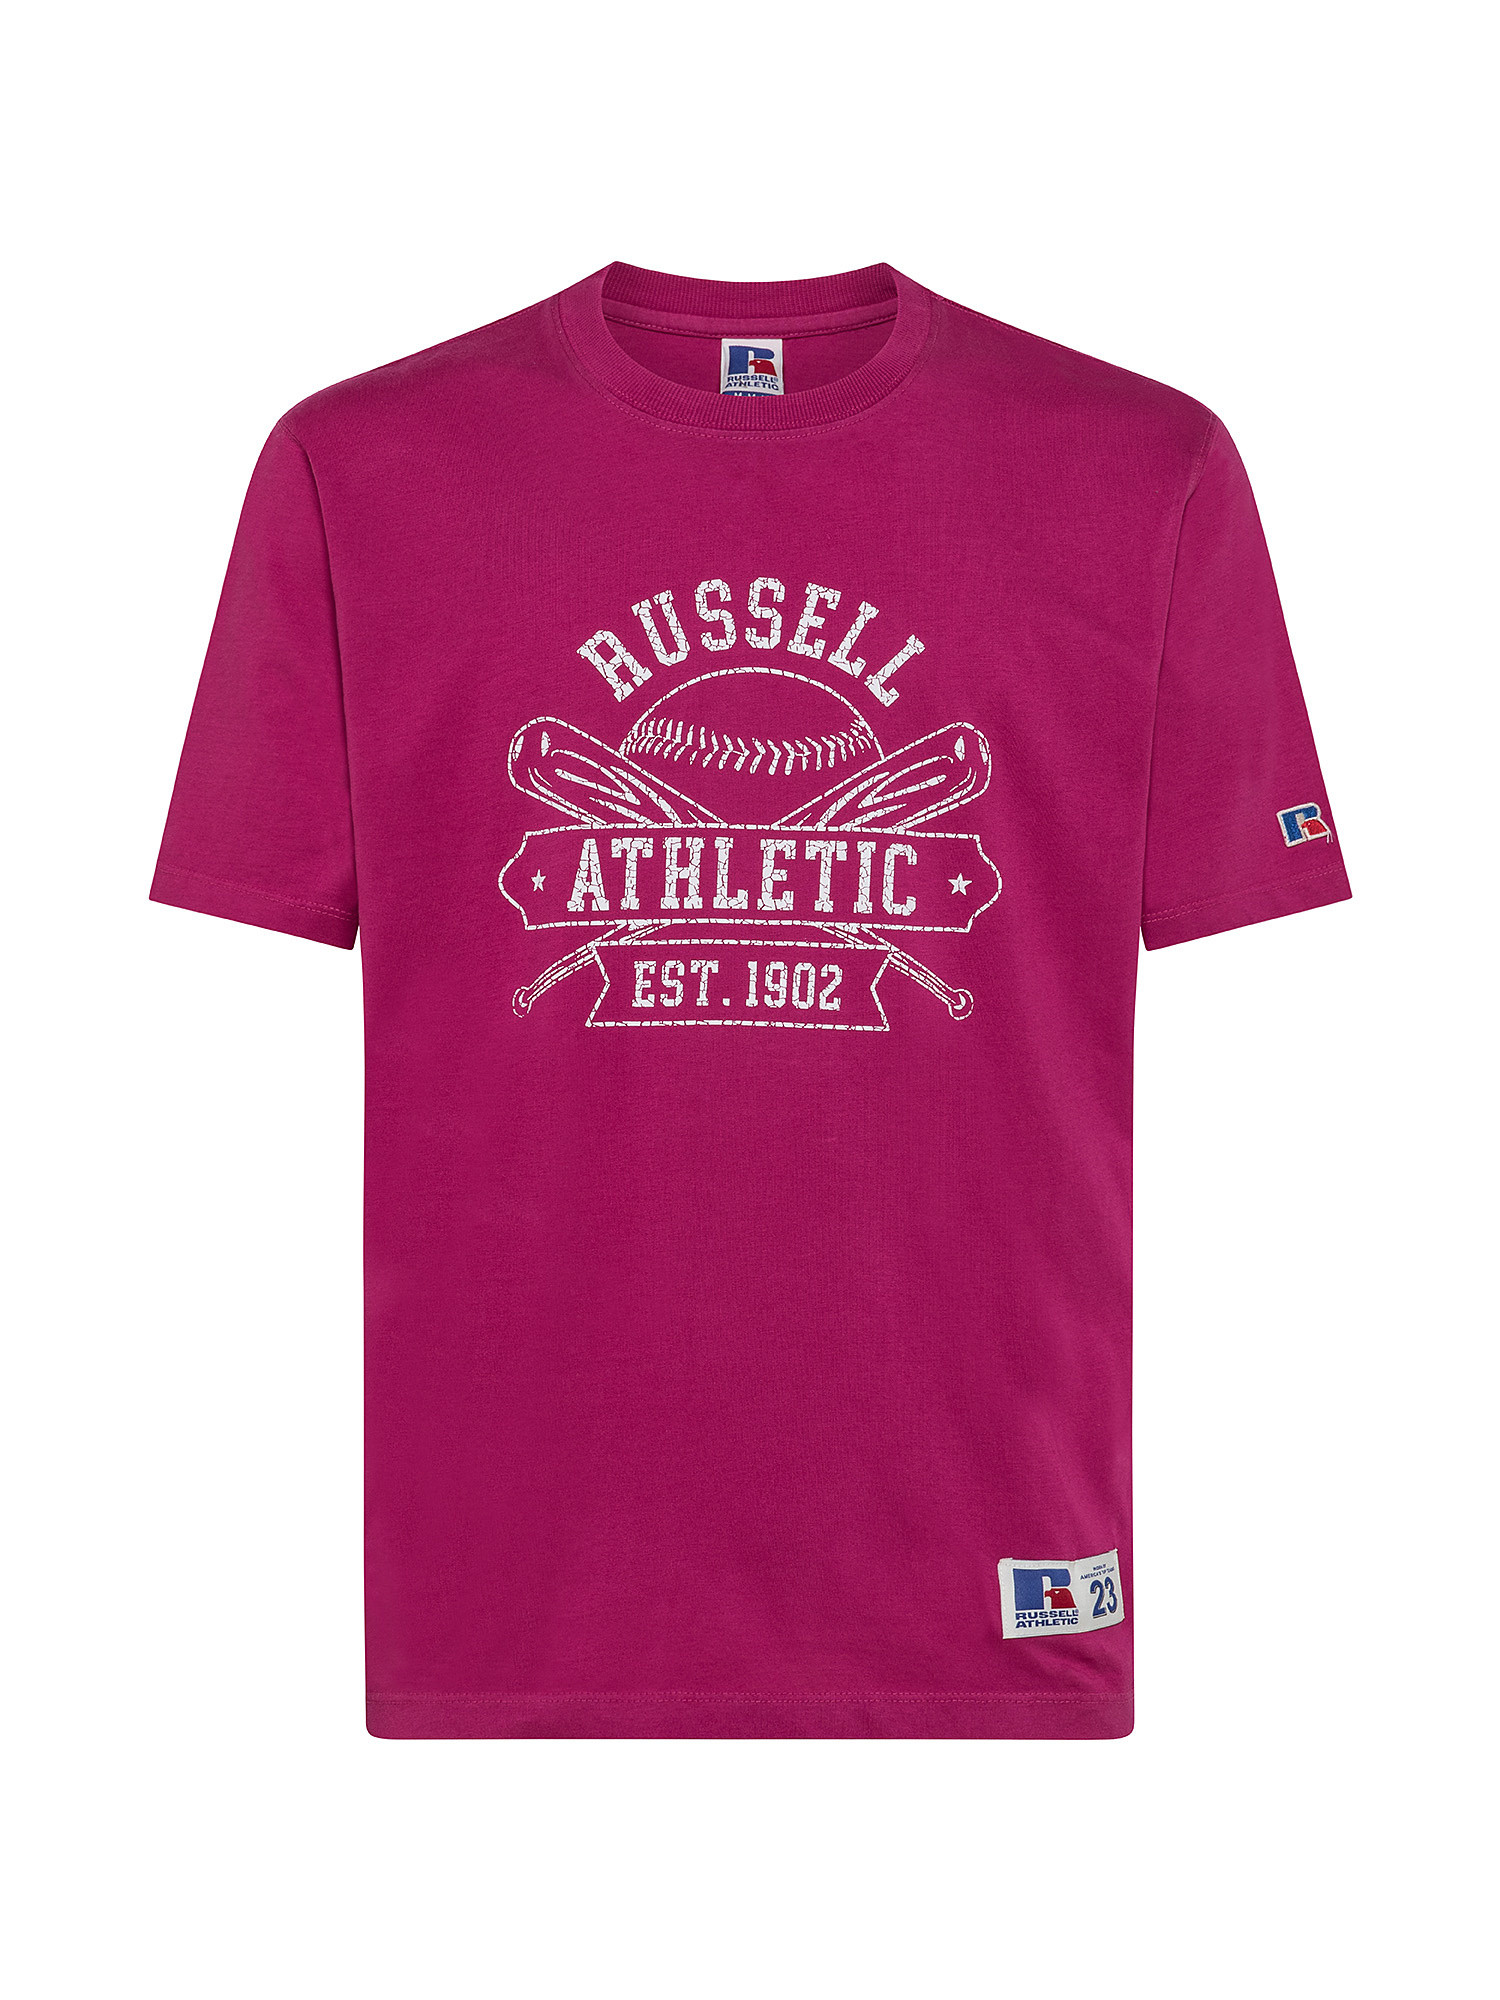 Tony Baseball T-Shirt, Pink Fuchsia, large image number 0